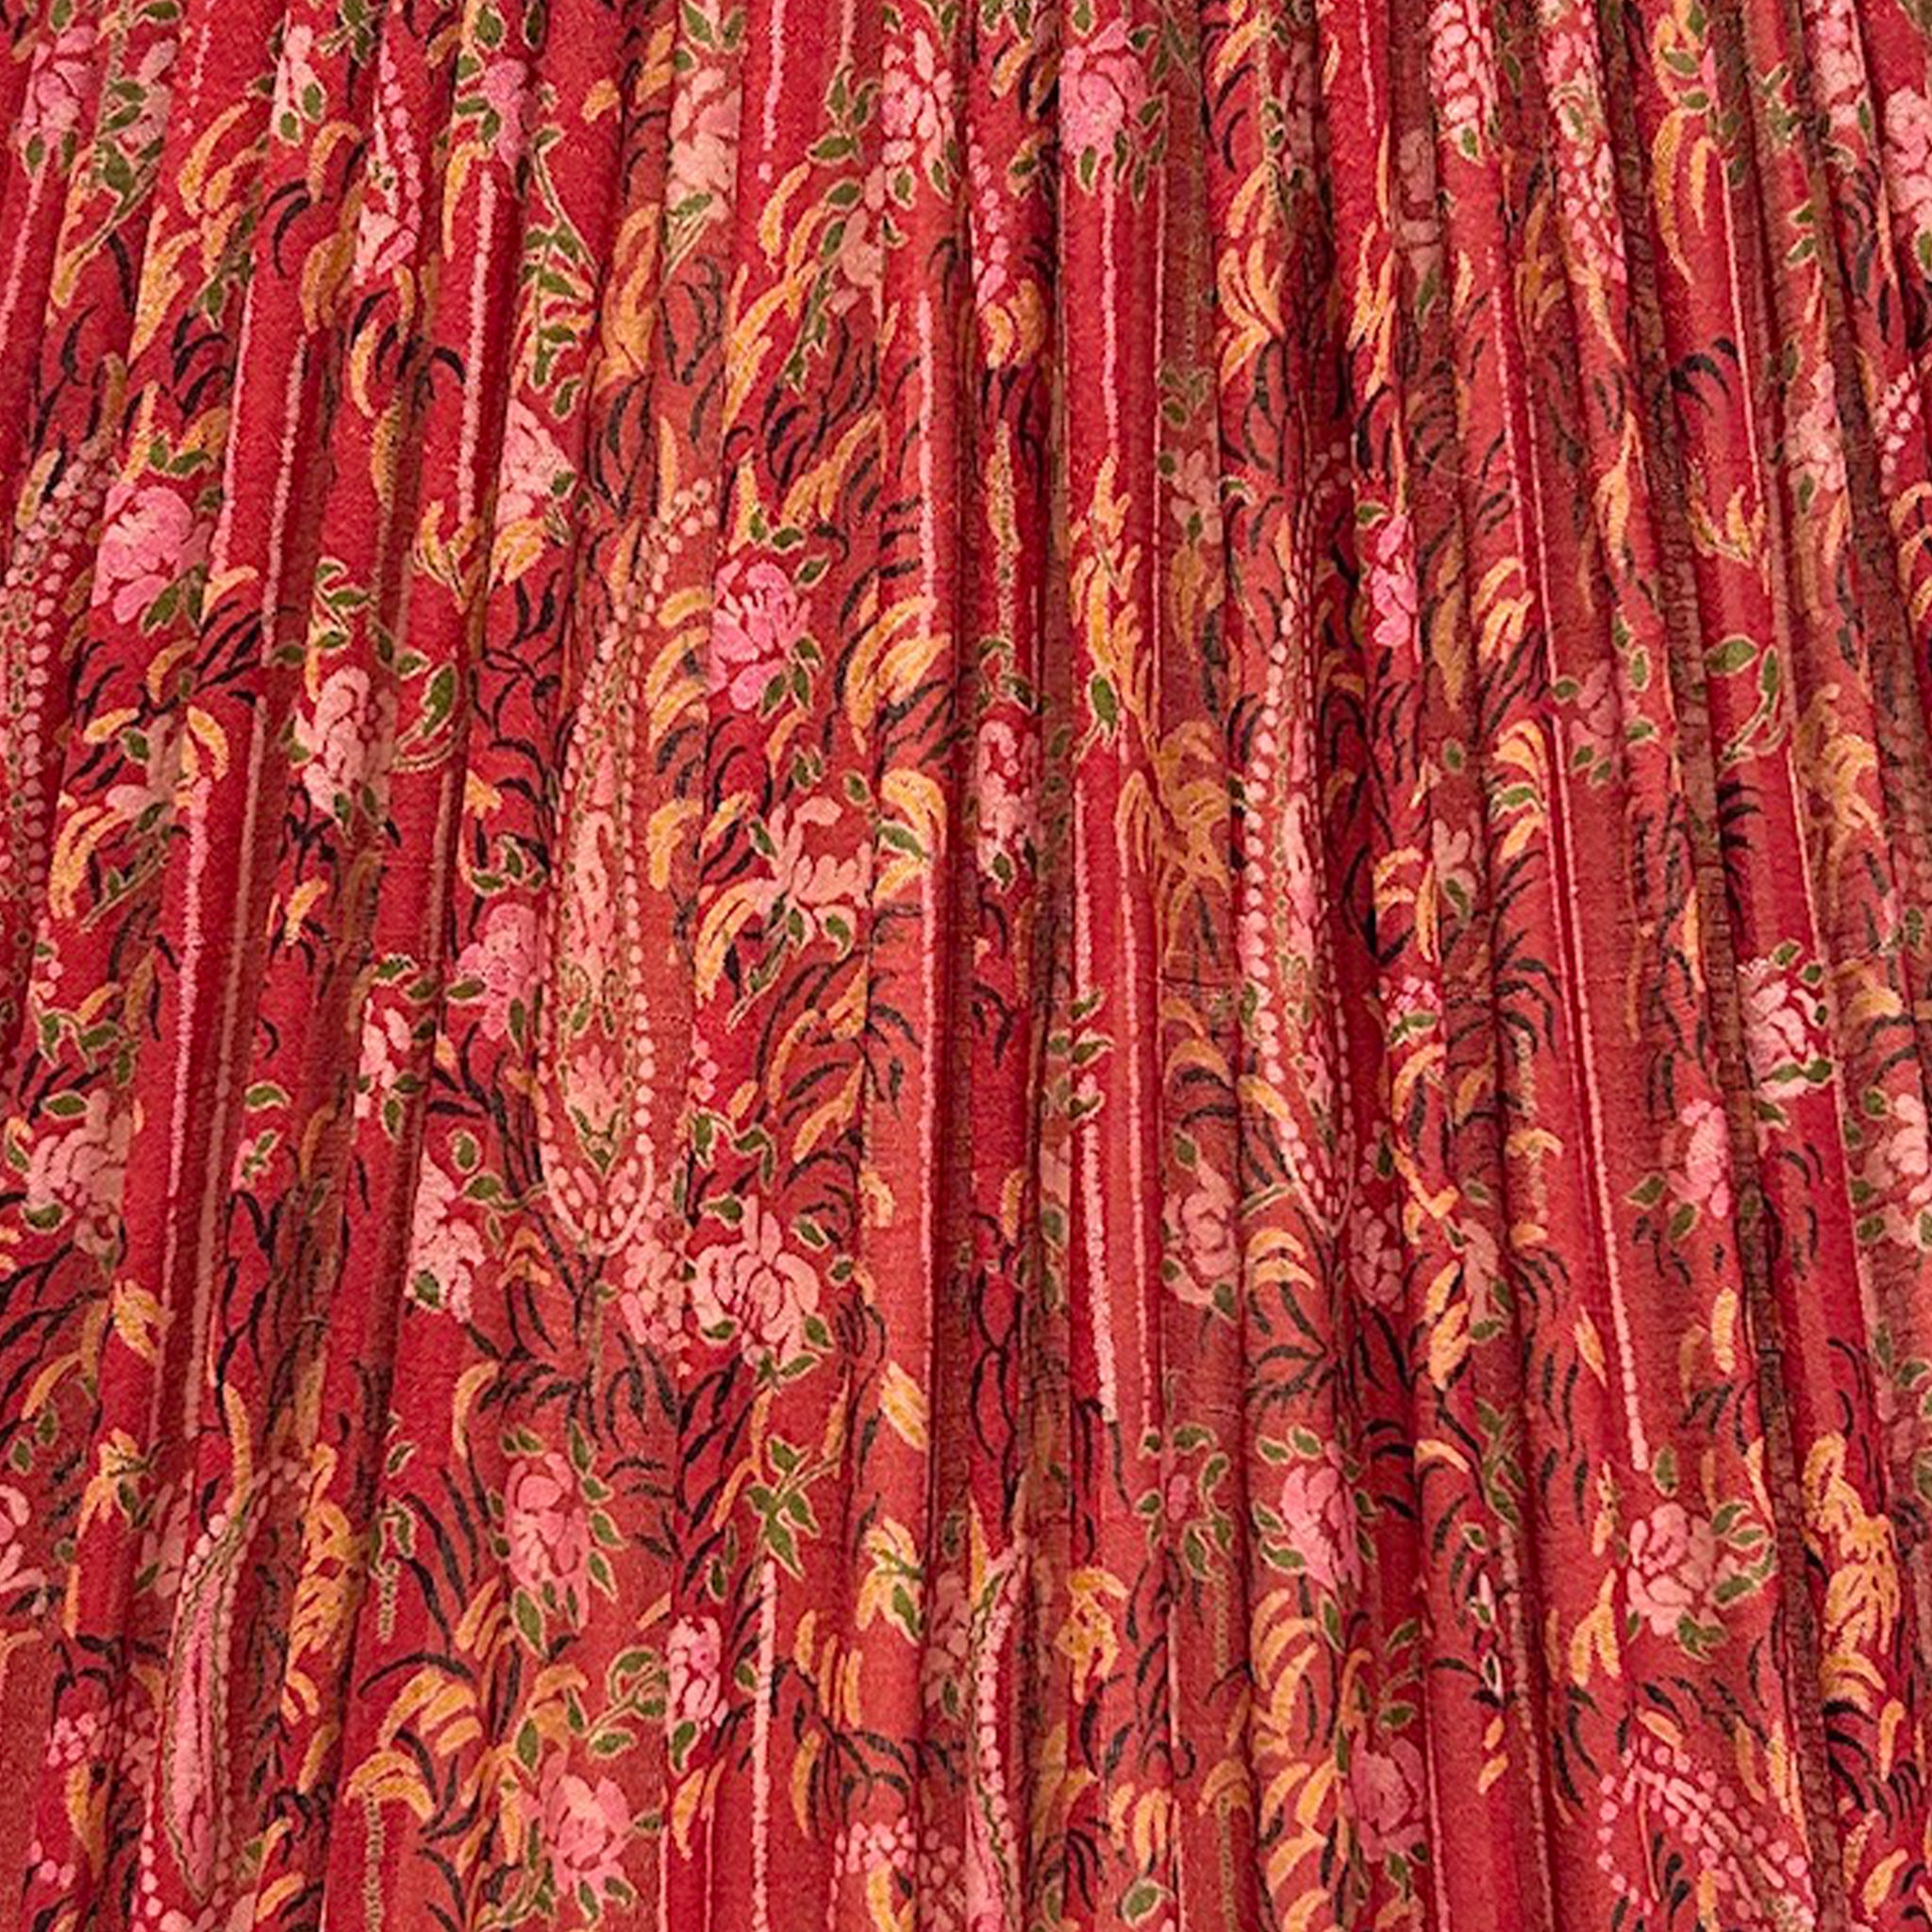 18" Silk Sari Lampshade - Cranberry Paisley Botanical